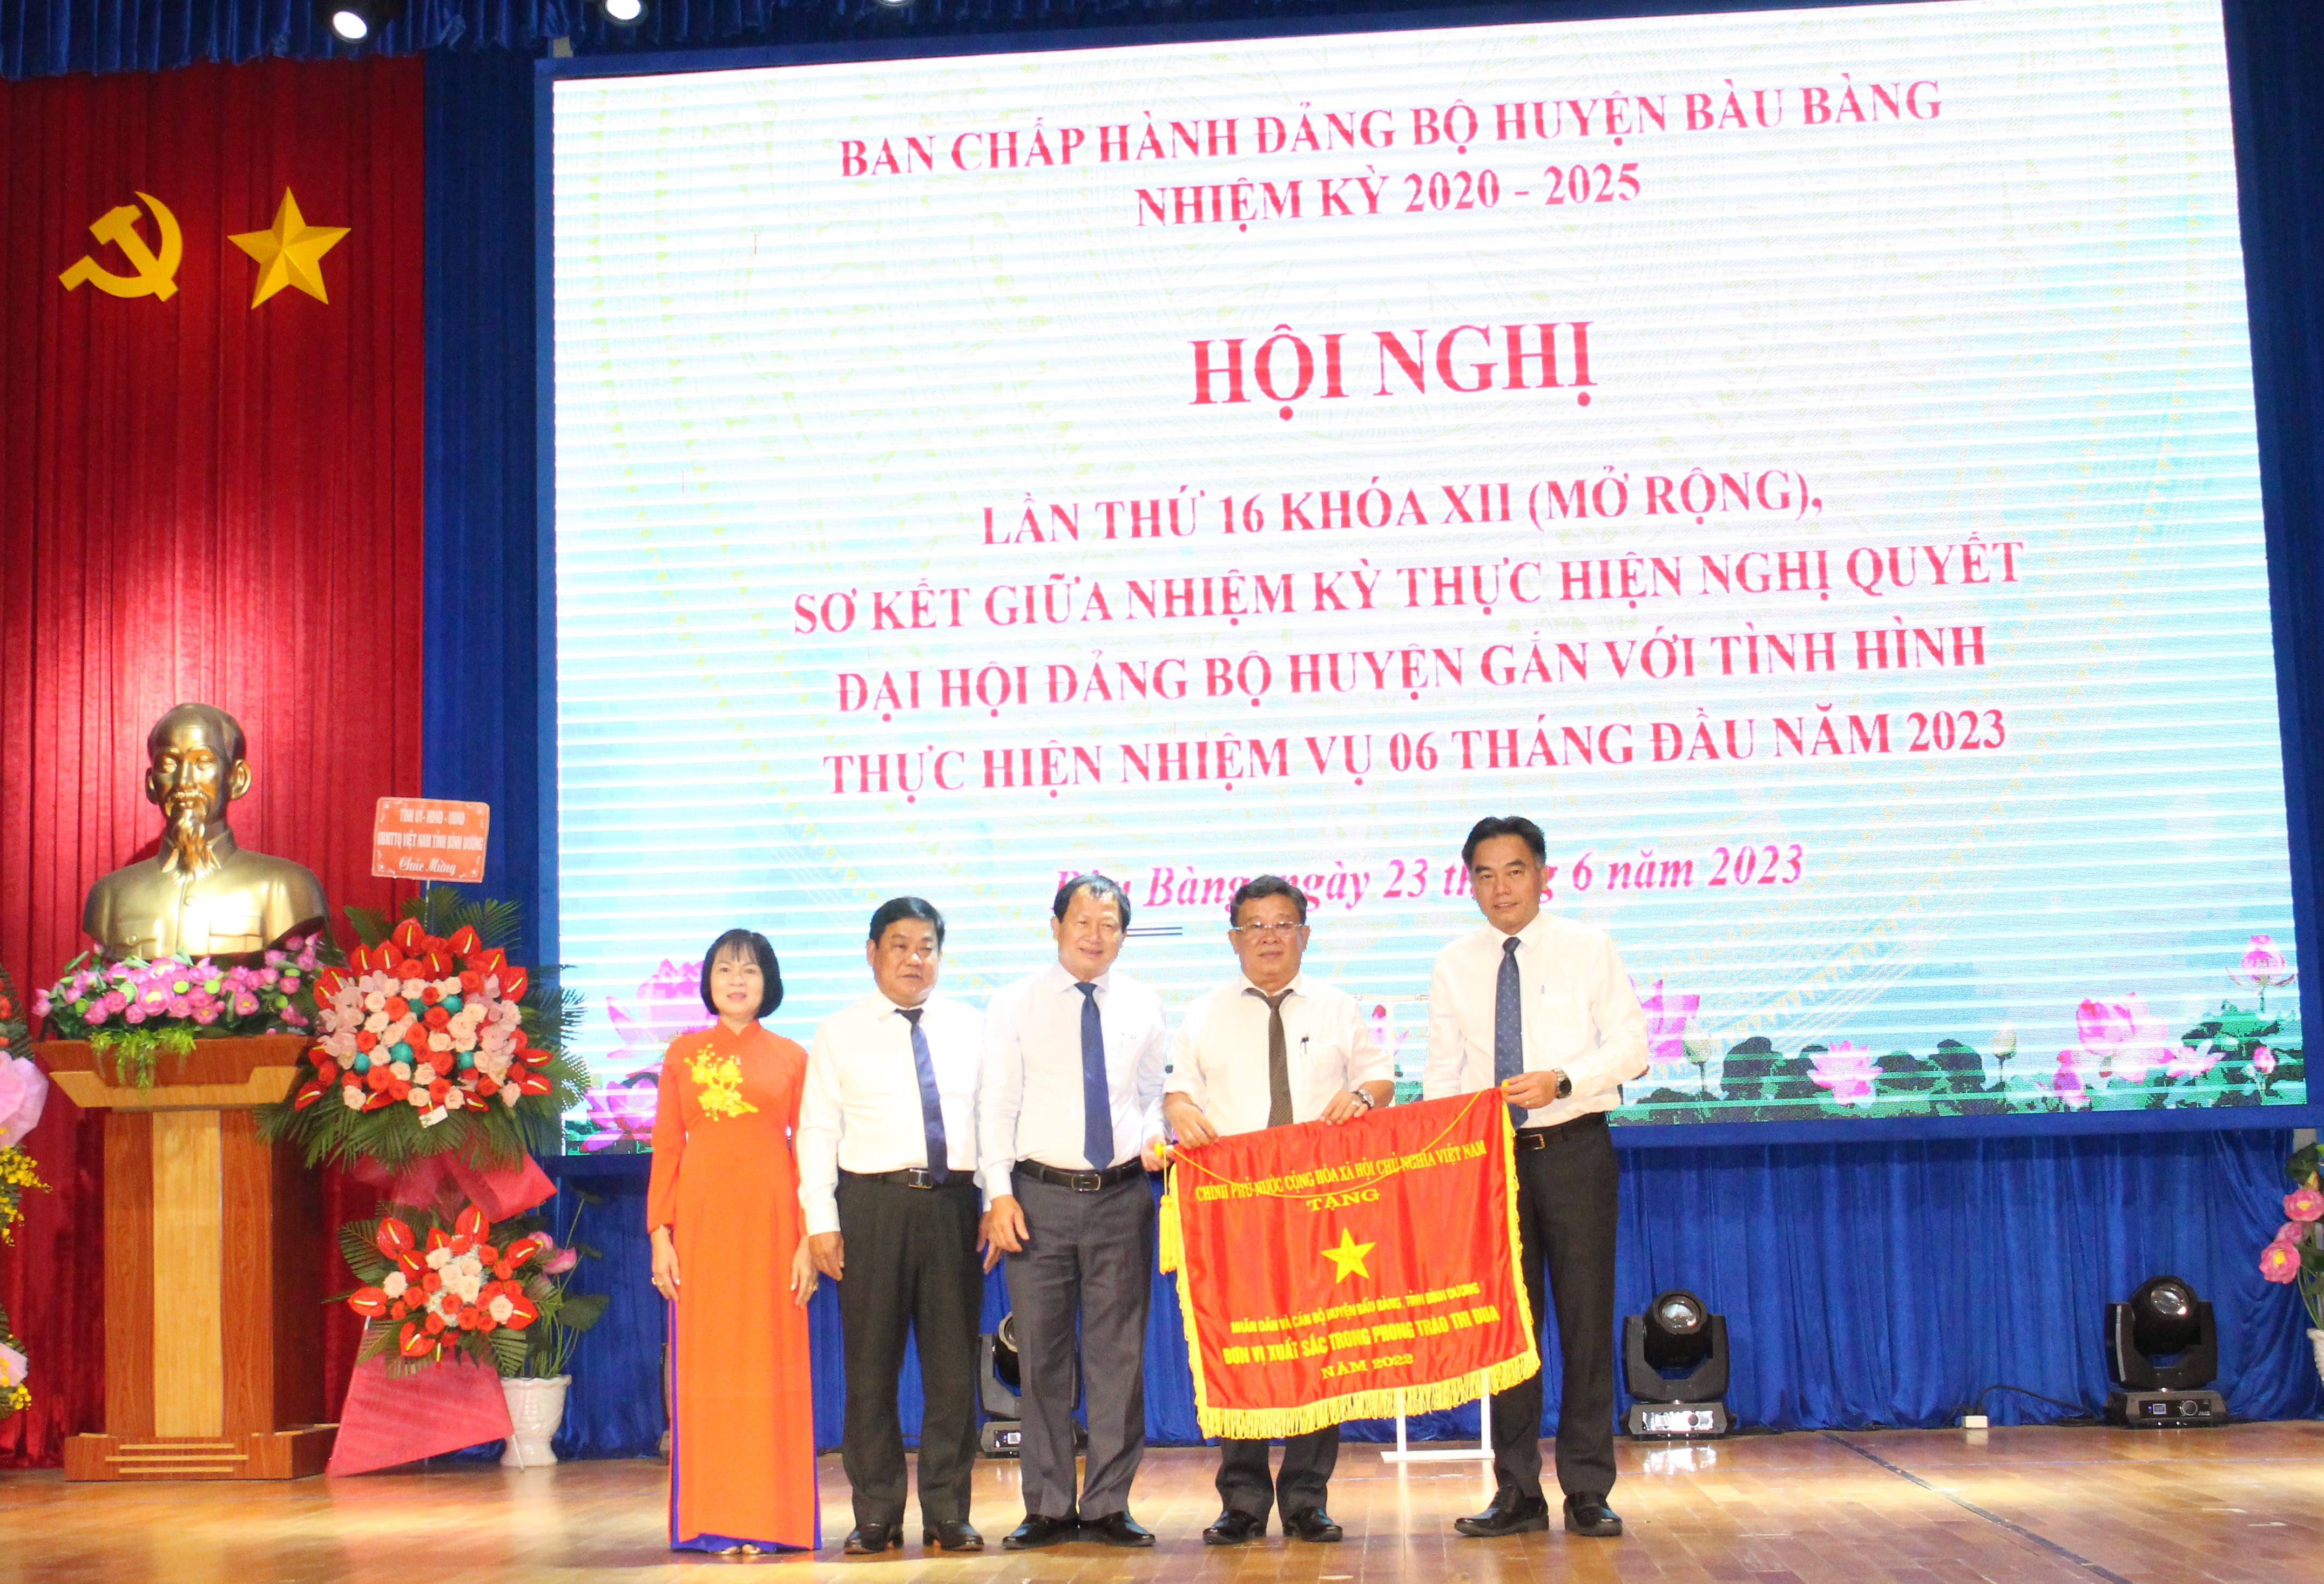 Huyện Bàu Bàng tổ chức Hội nghị Sơ kết giữa giữa nhiệm kỳ thực hiện nghị quyết Đại hội Đảng bộ huyện (2020-2025) gắn với tình hình thực hiện nhiệm vụ 06 tháng đầu năm 2023.